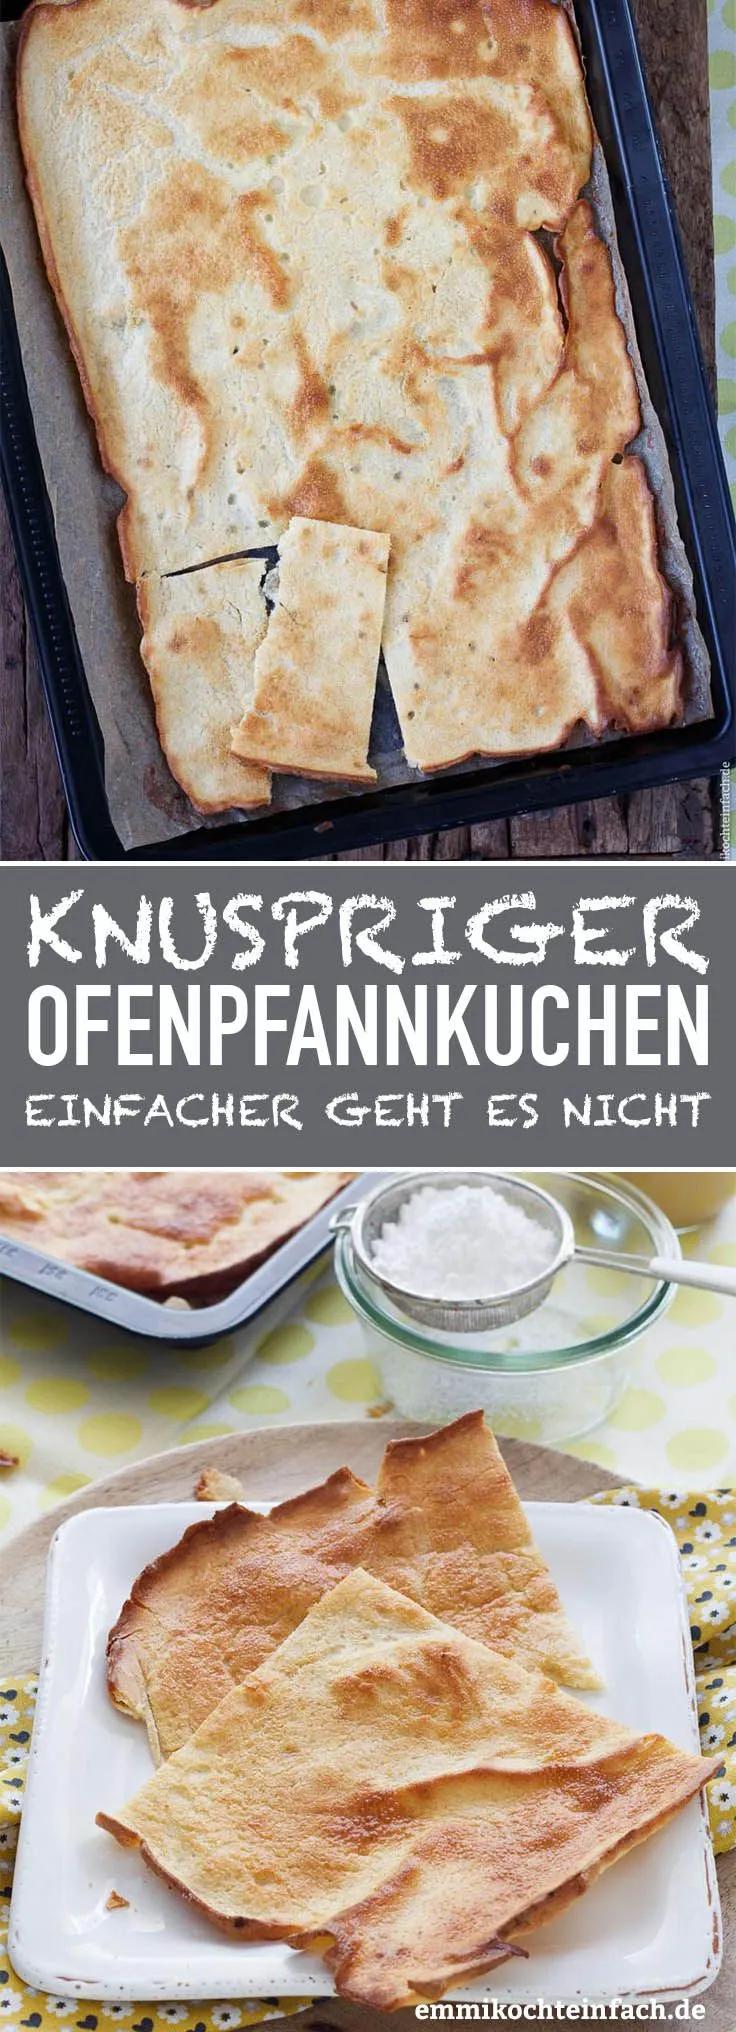 Knuspriger Ofenpfannkuchen - www.emmikochteinfach.de Oven Pancakes ...